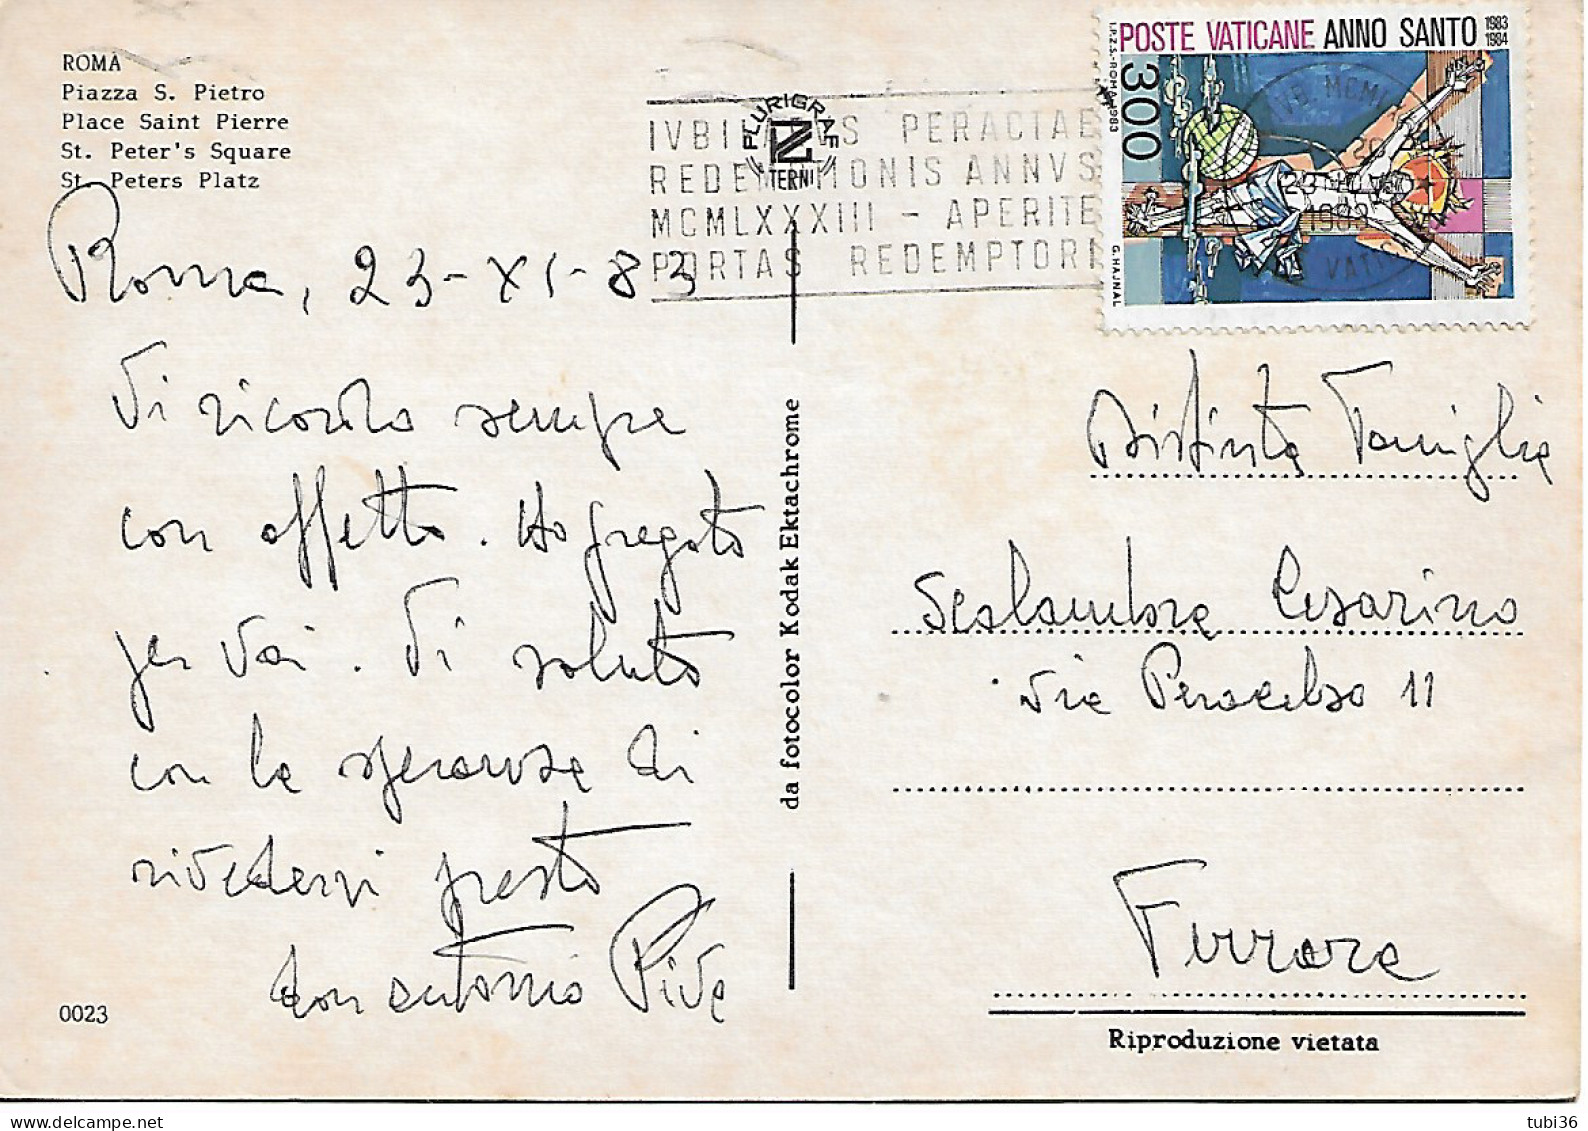 VATICANO - ANNO SANTO 1983 £.300 - ISOLATO SU CARTOLINA  ILL.-1983- TIMBRO POSTE VATICANE -ROMA PIAZZA S. PIETRO Colori - Covers & Documents